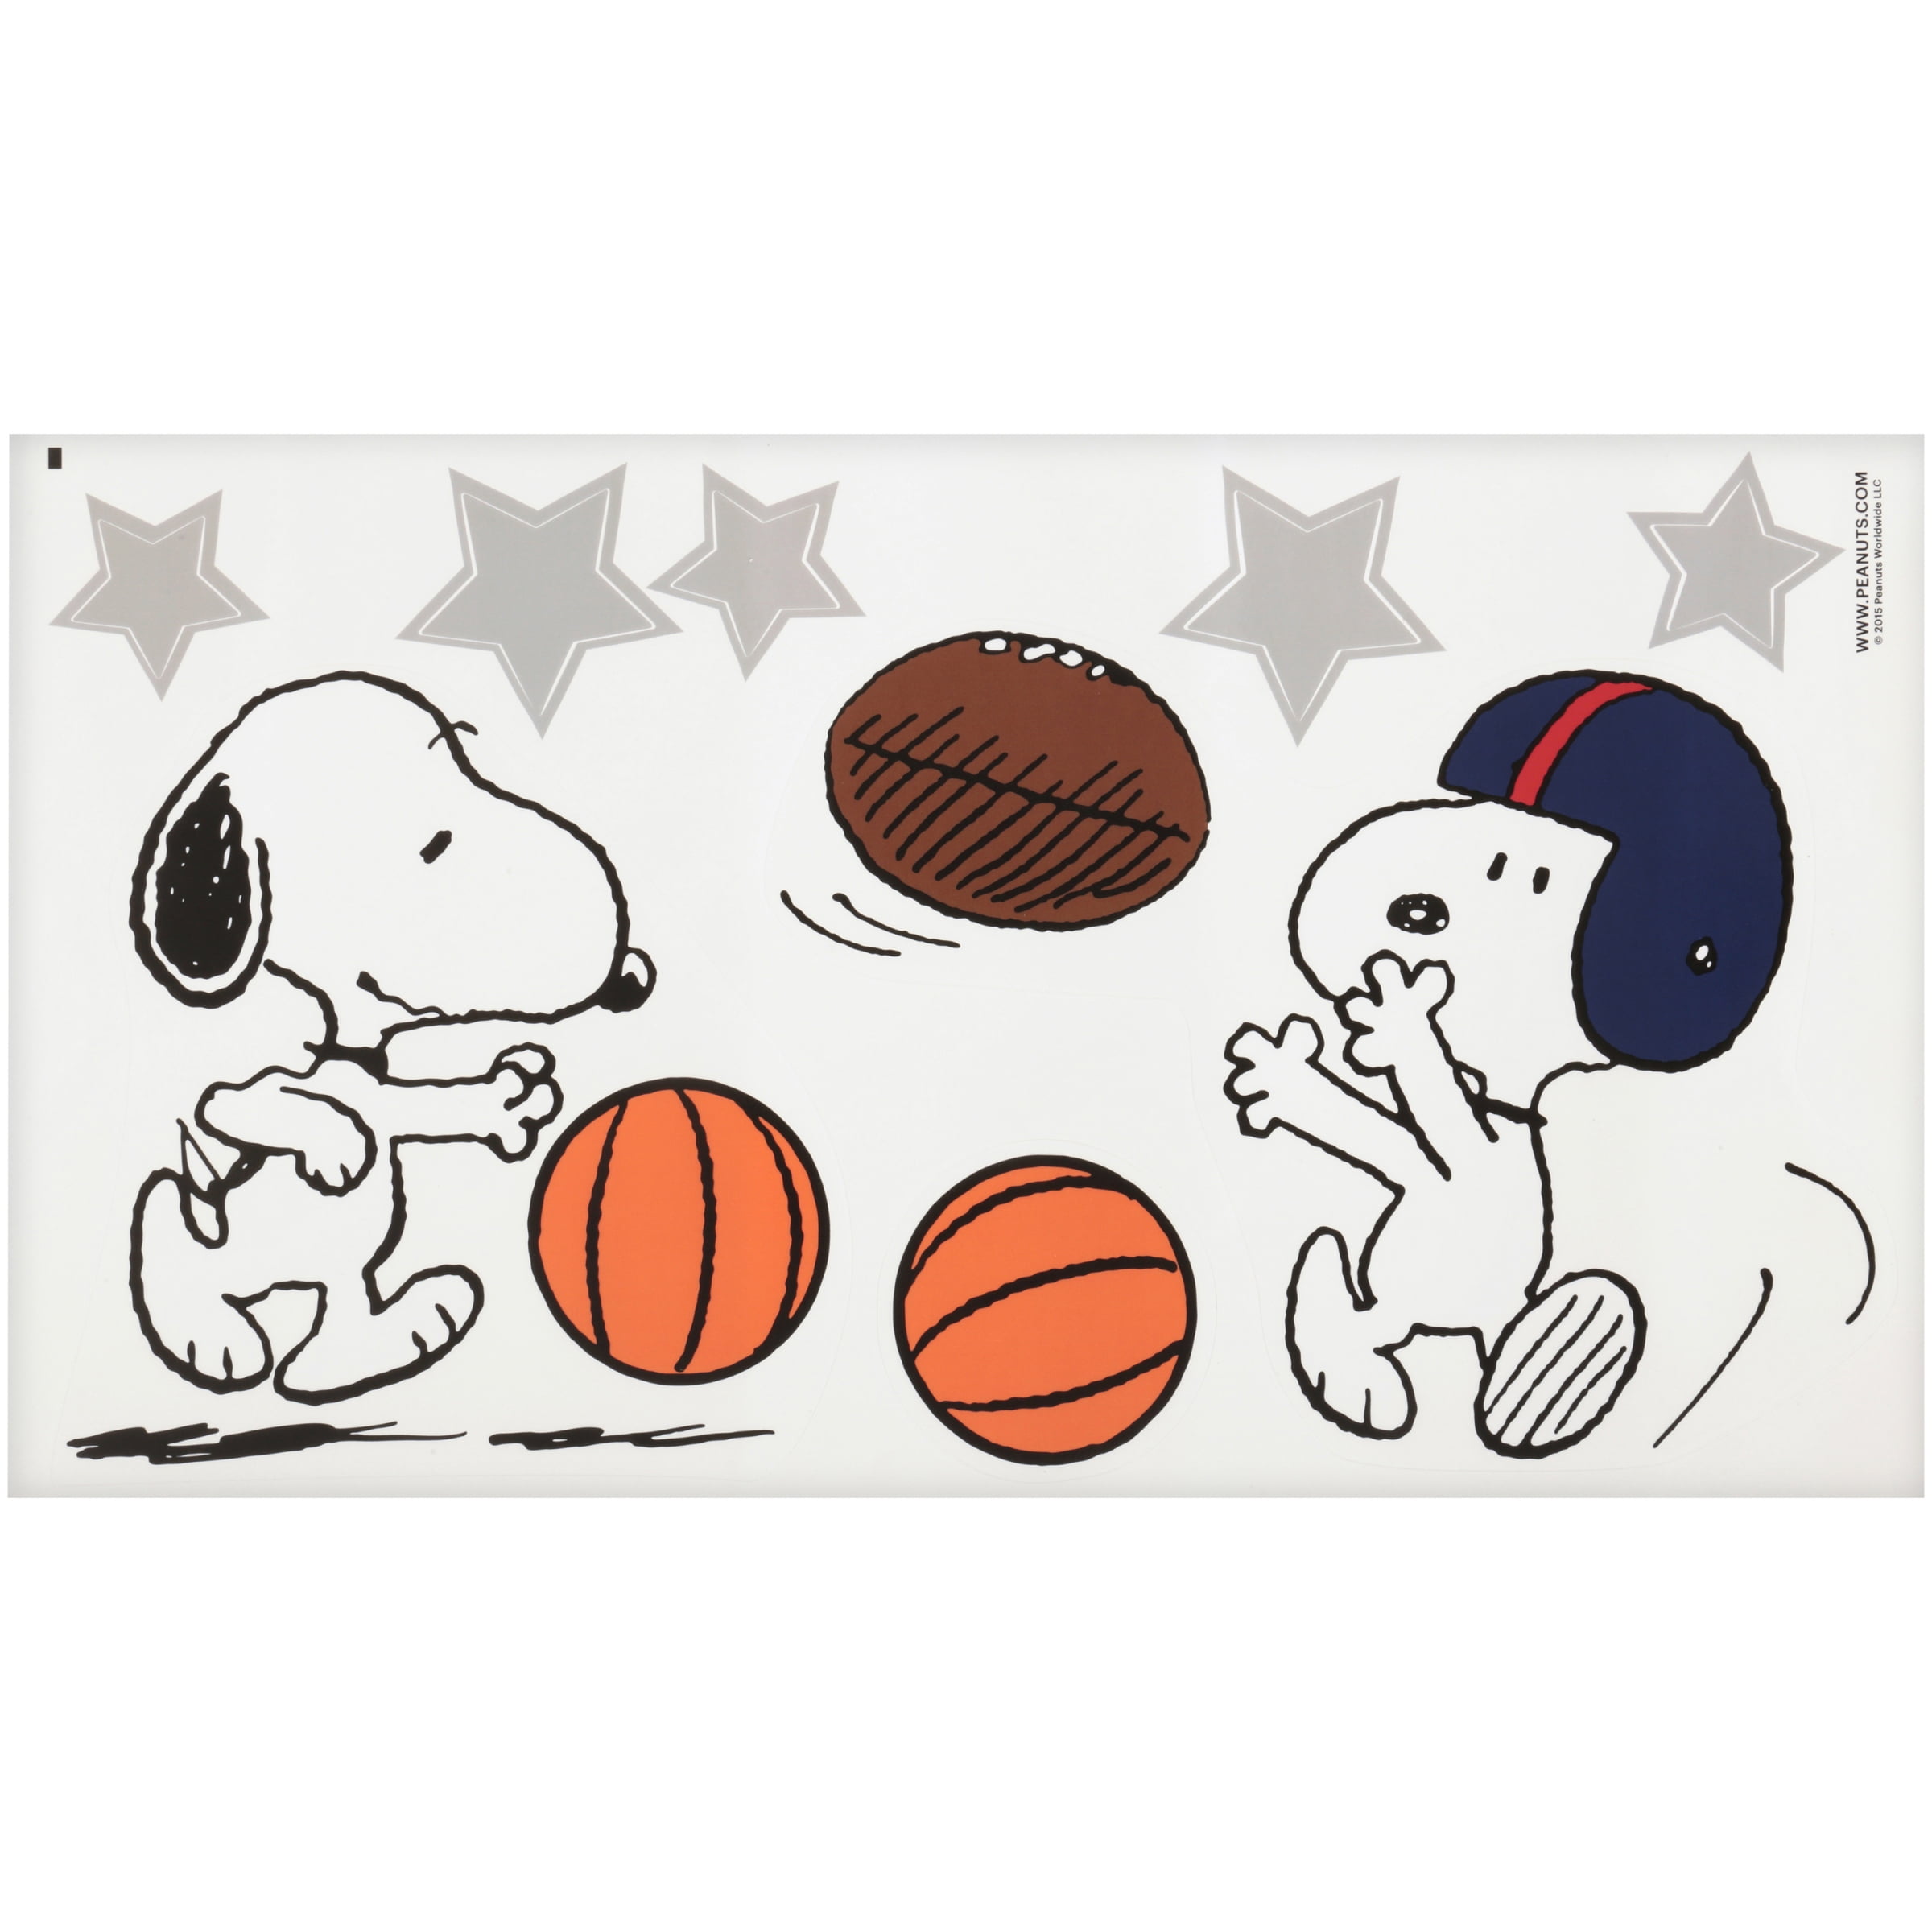 Bedtime Originals? Peanuts® Snoopy Sports Wall Appliqués 3 ct Pack